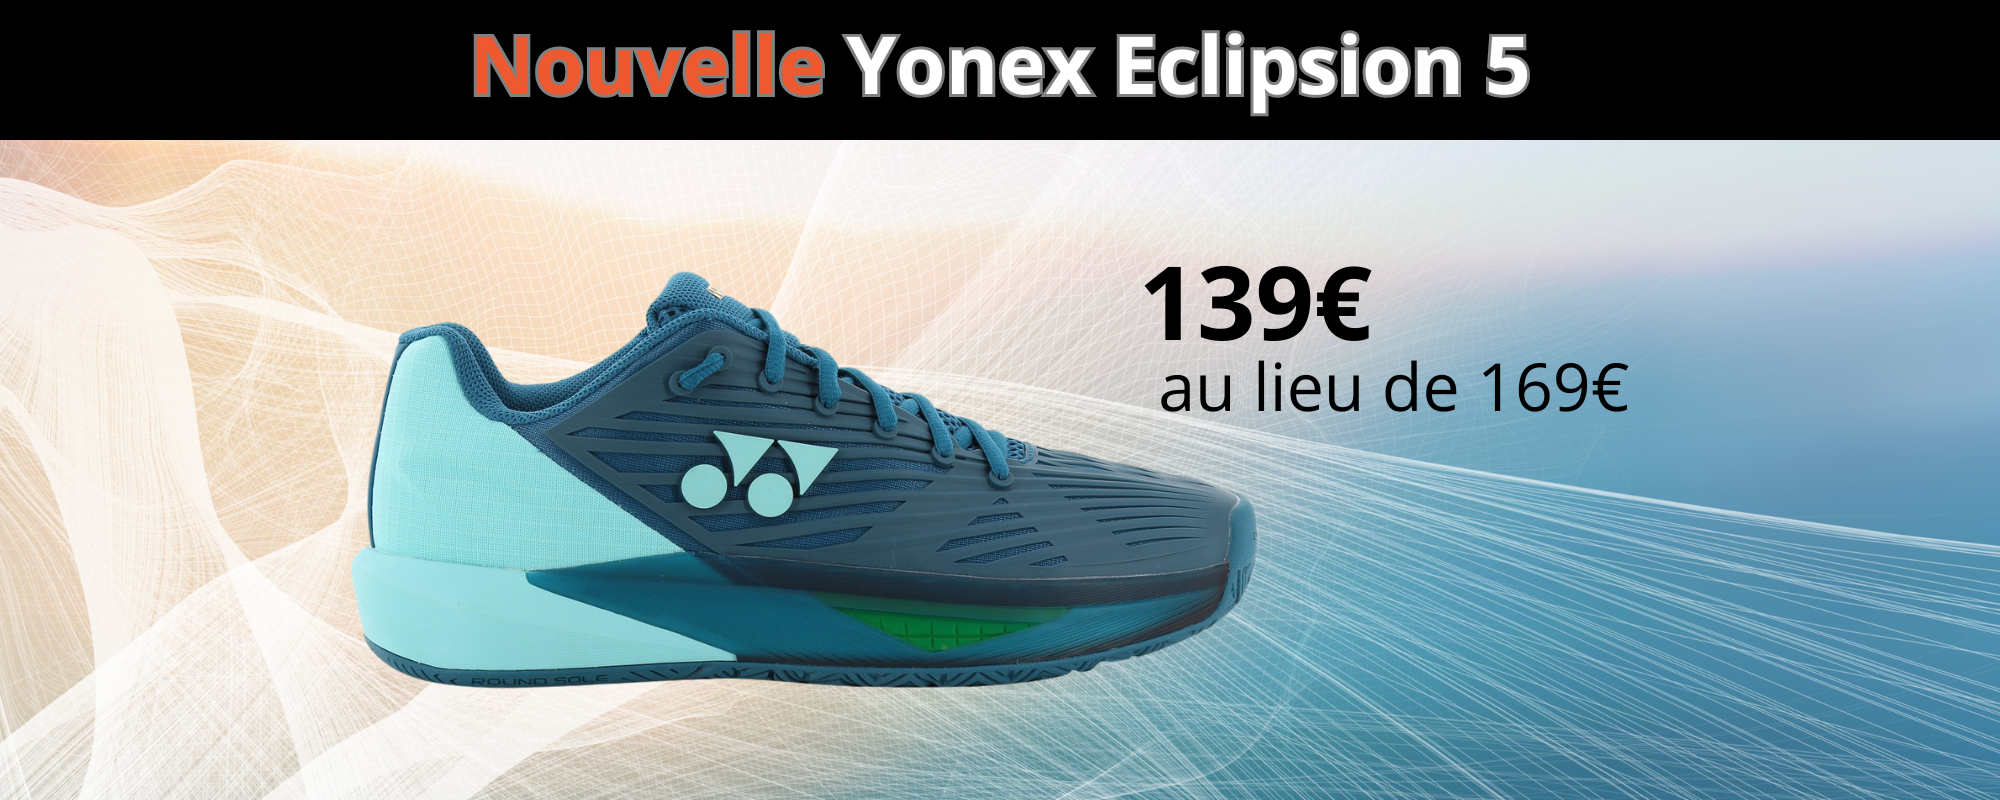 Yonex Eclipsion 5